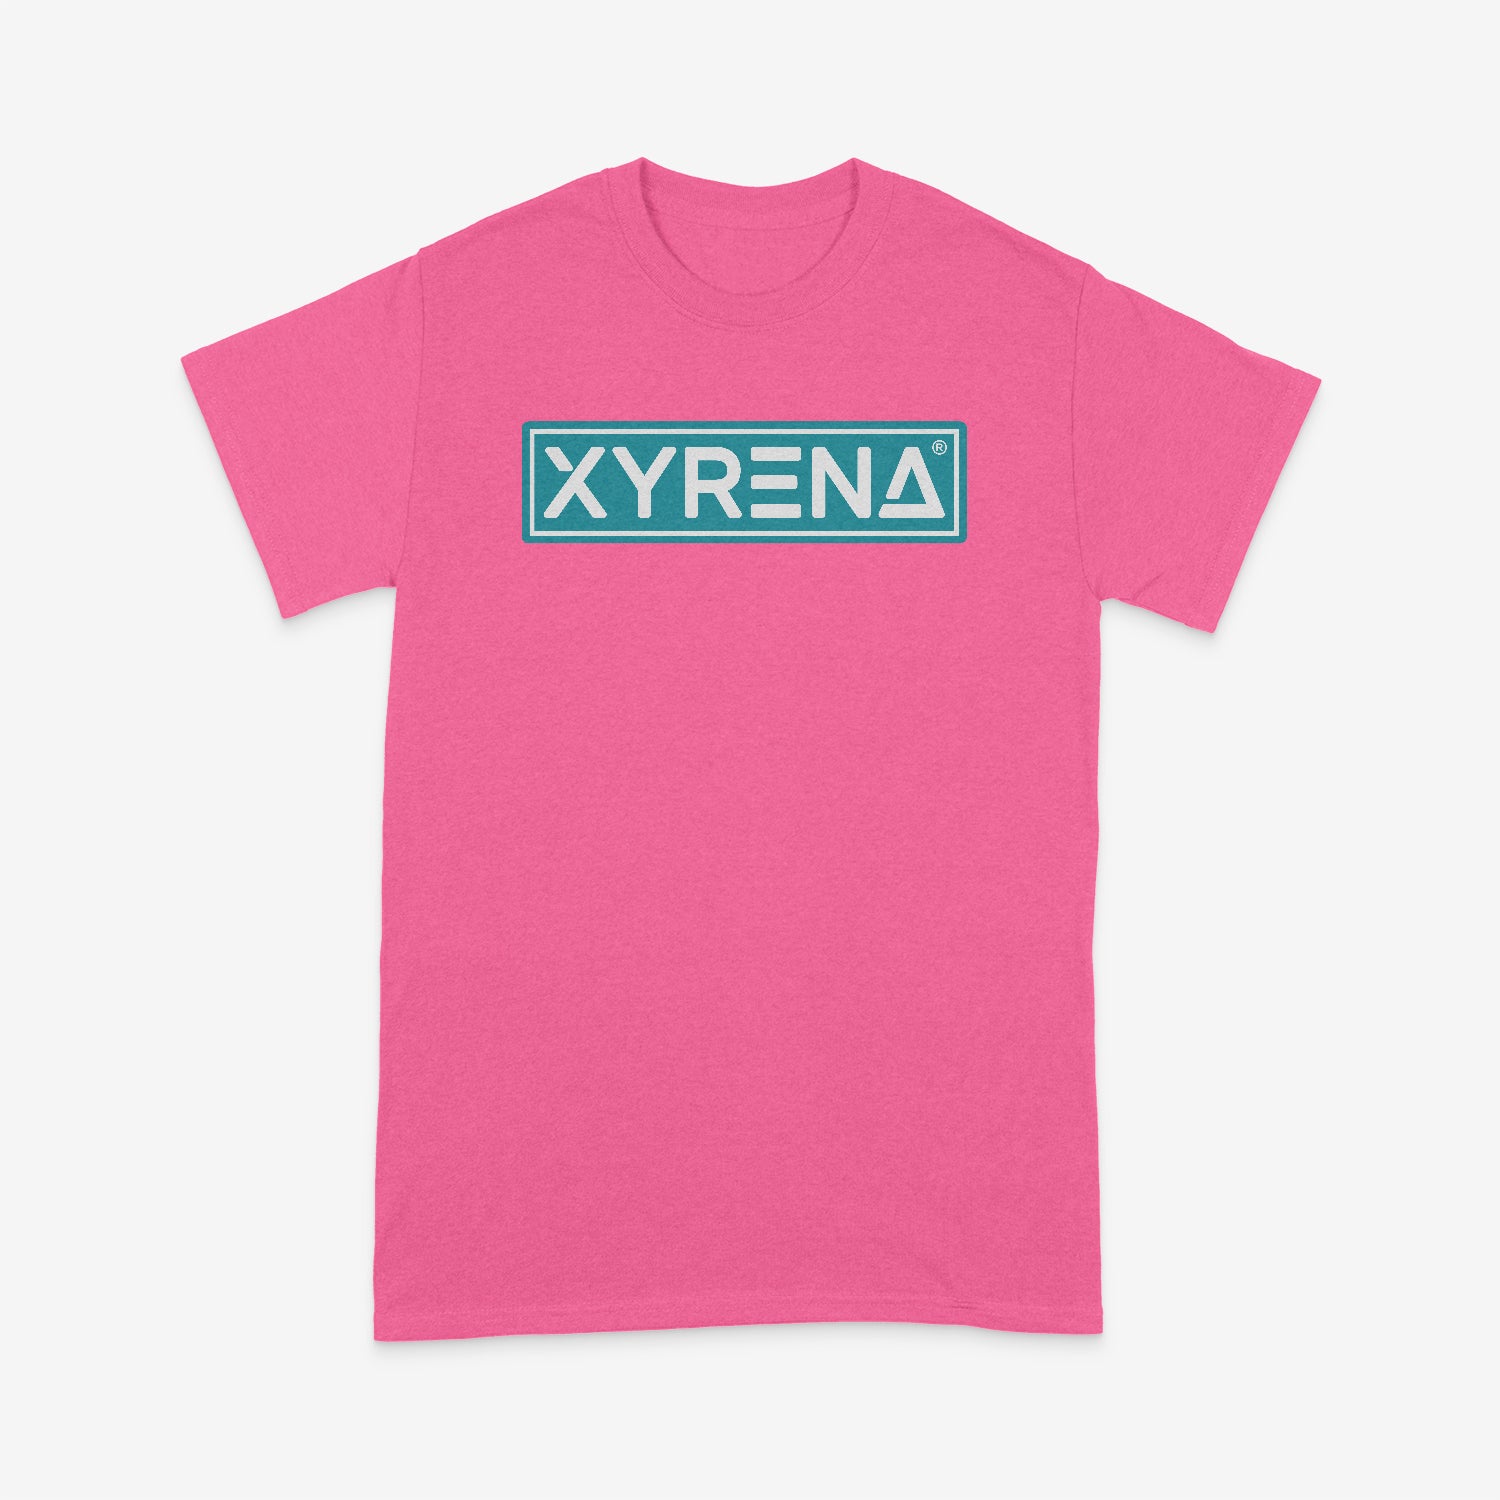 Xyrena Retro Neon Miami T-Shirt